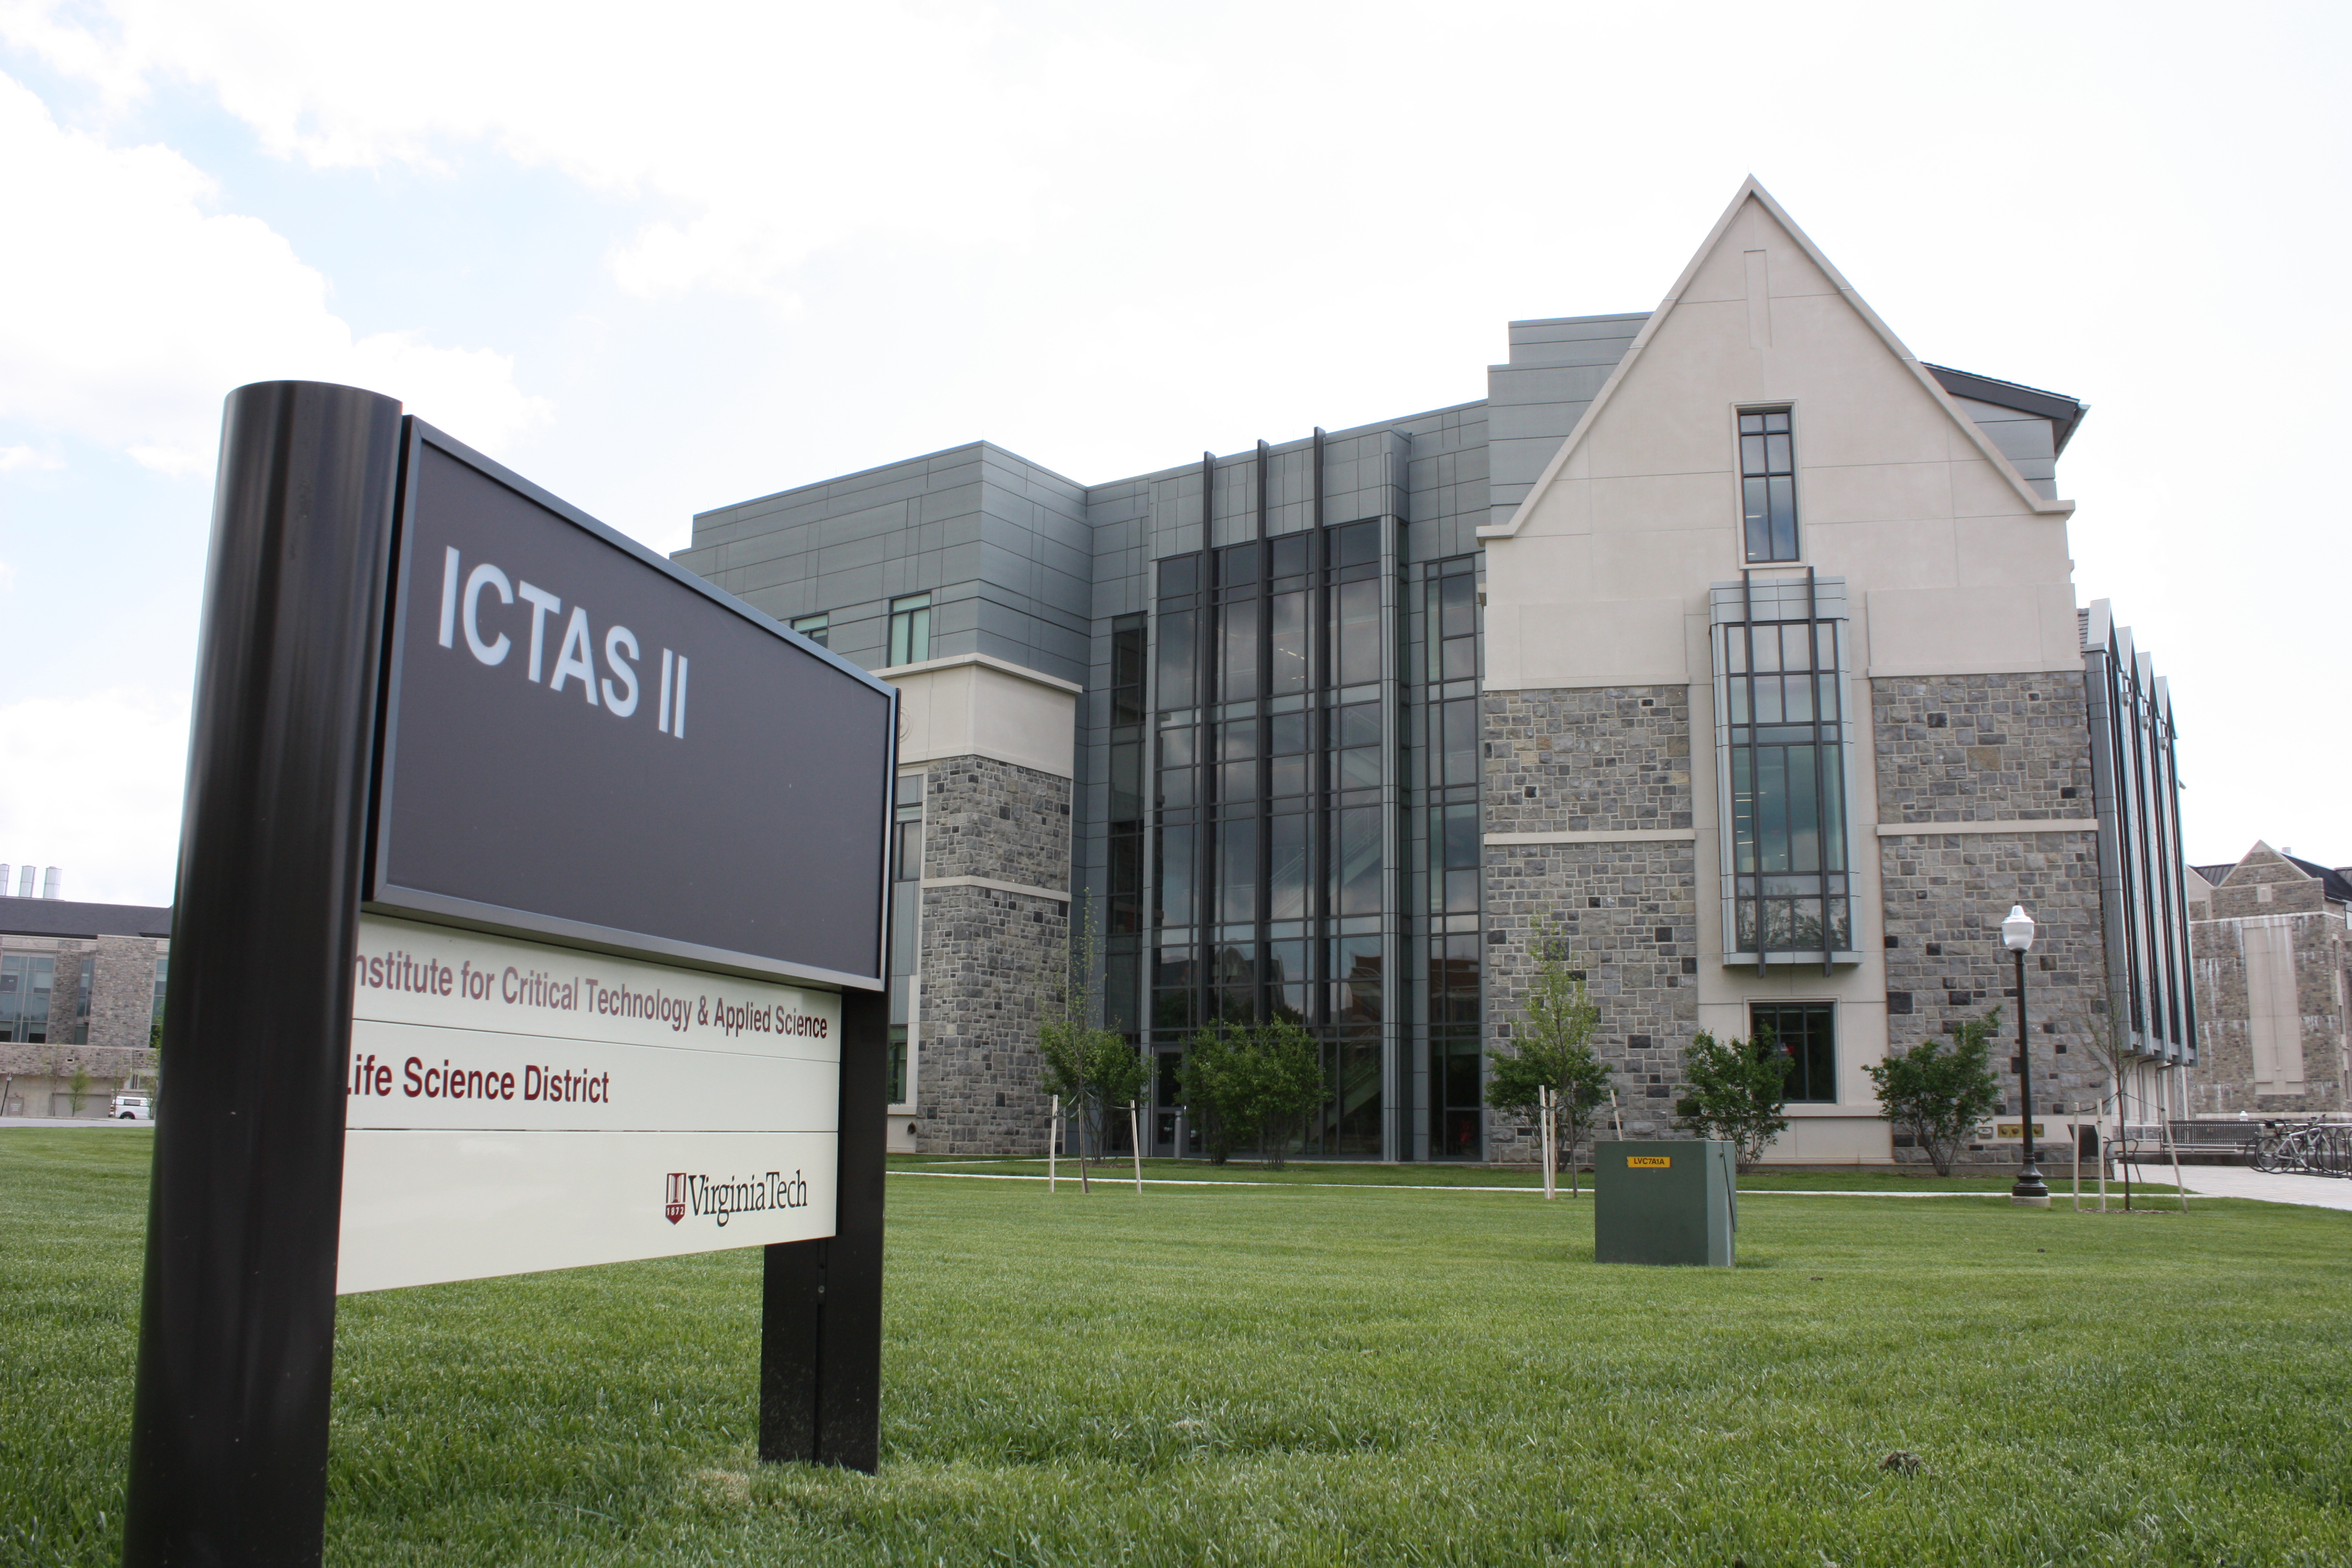 ICTAS II building